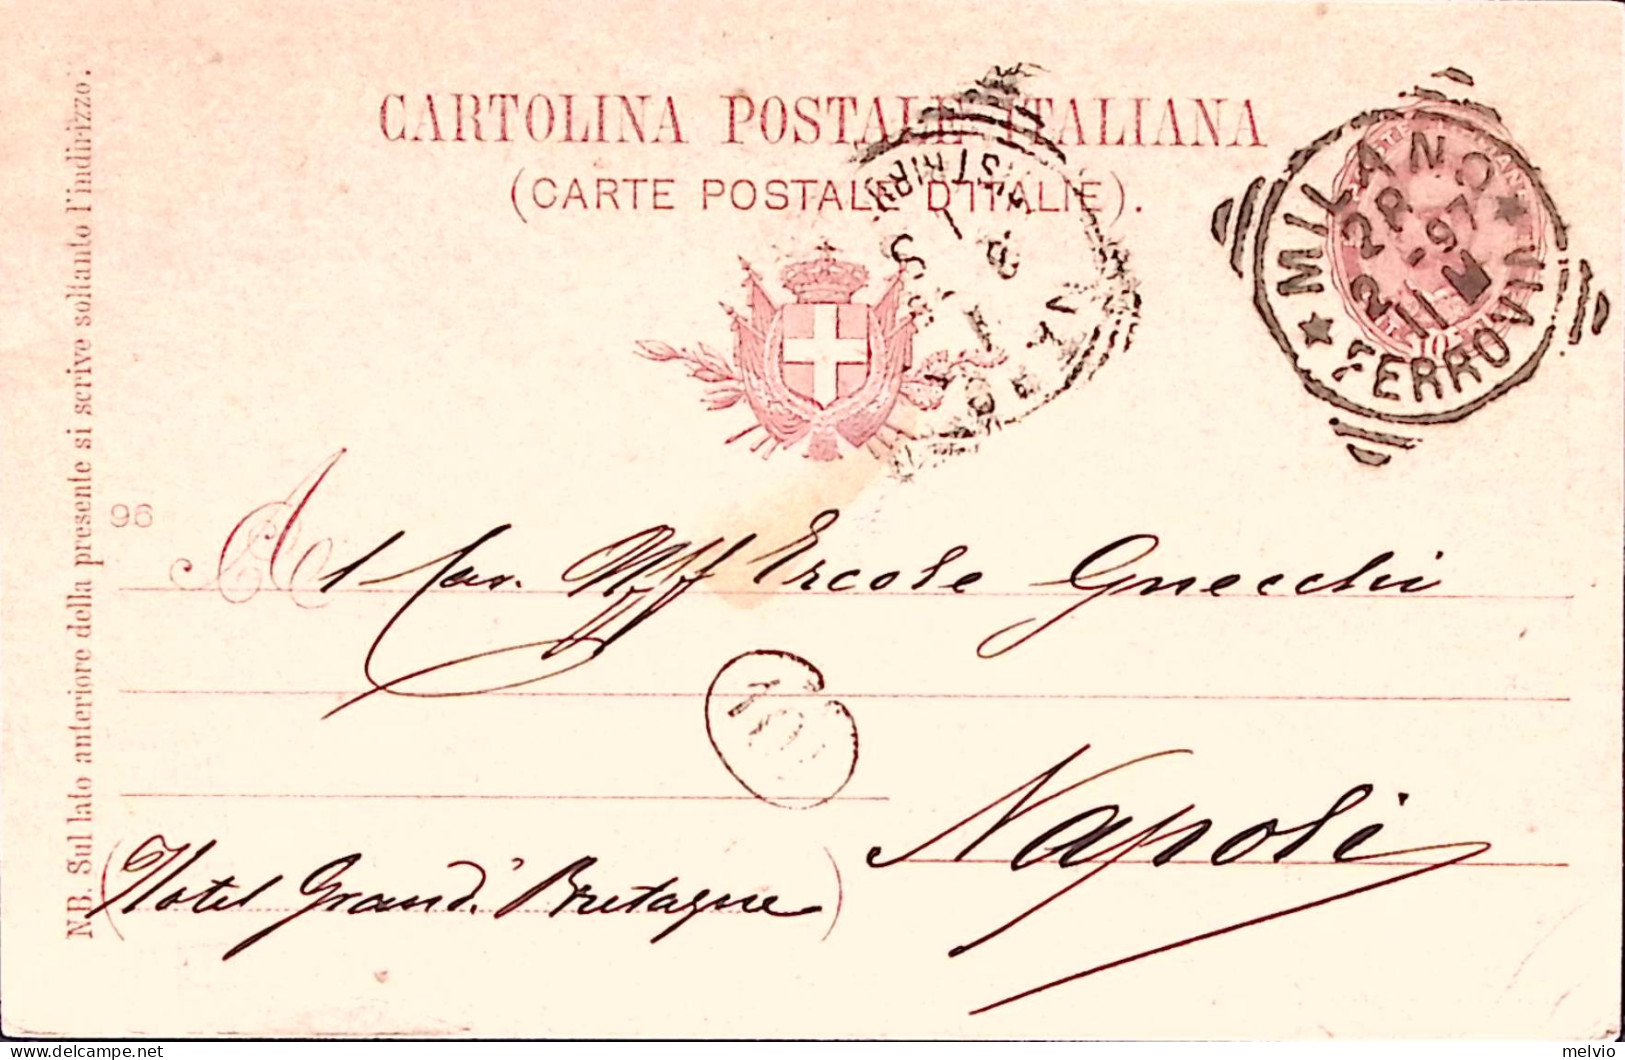 1896-Cartolina Postale Nozze Principe Ereditario Vignetta Colore Rosso Mattone V - Entiers Postaux